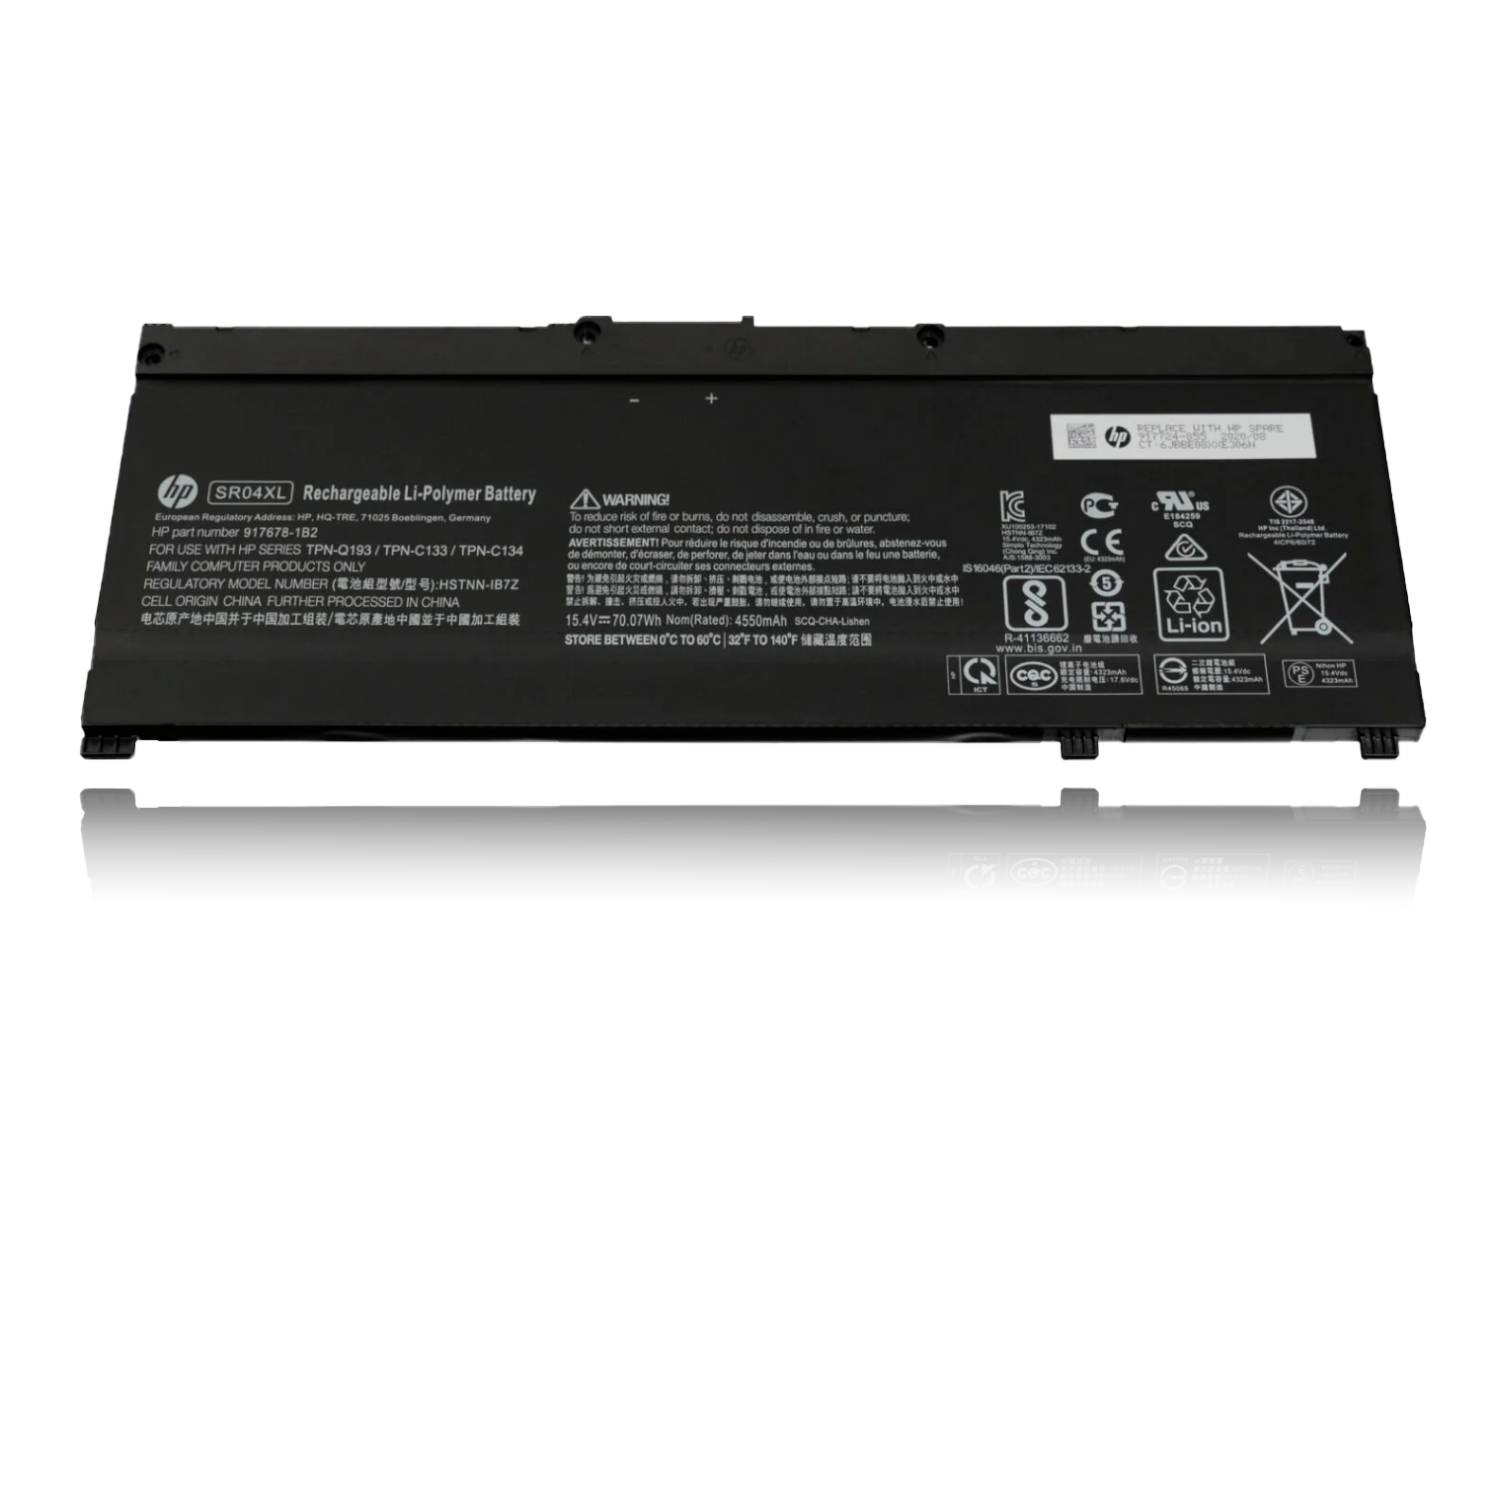 Battery for HP Omen DC-0005ne